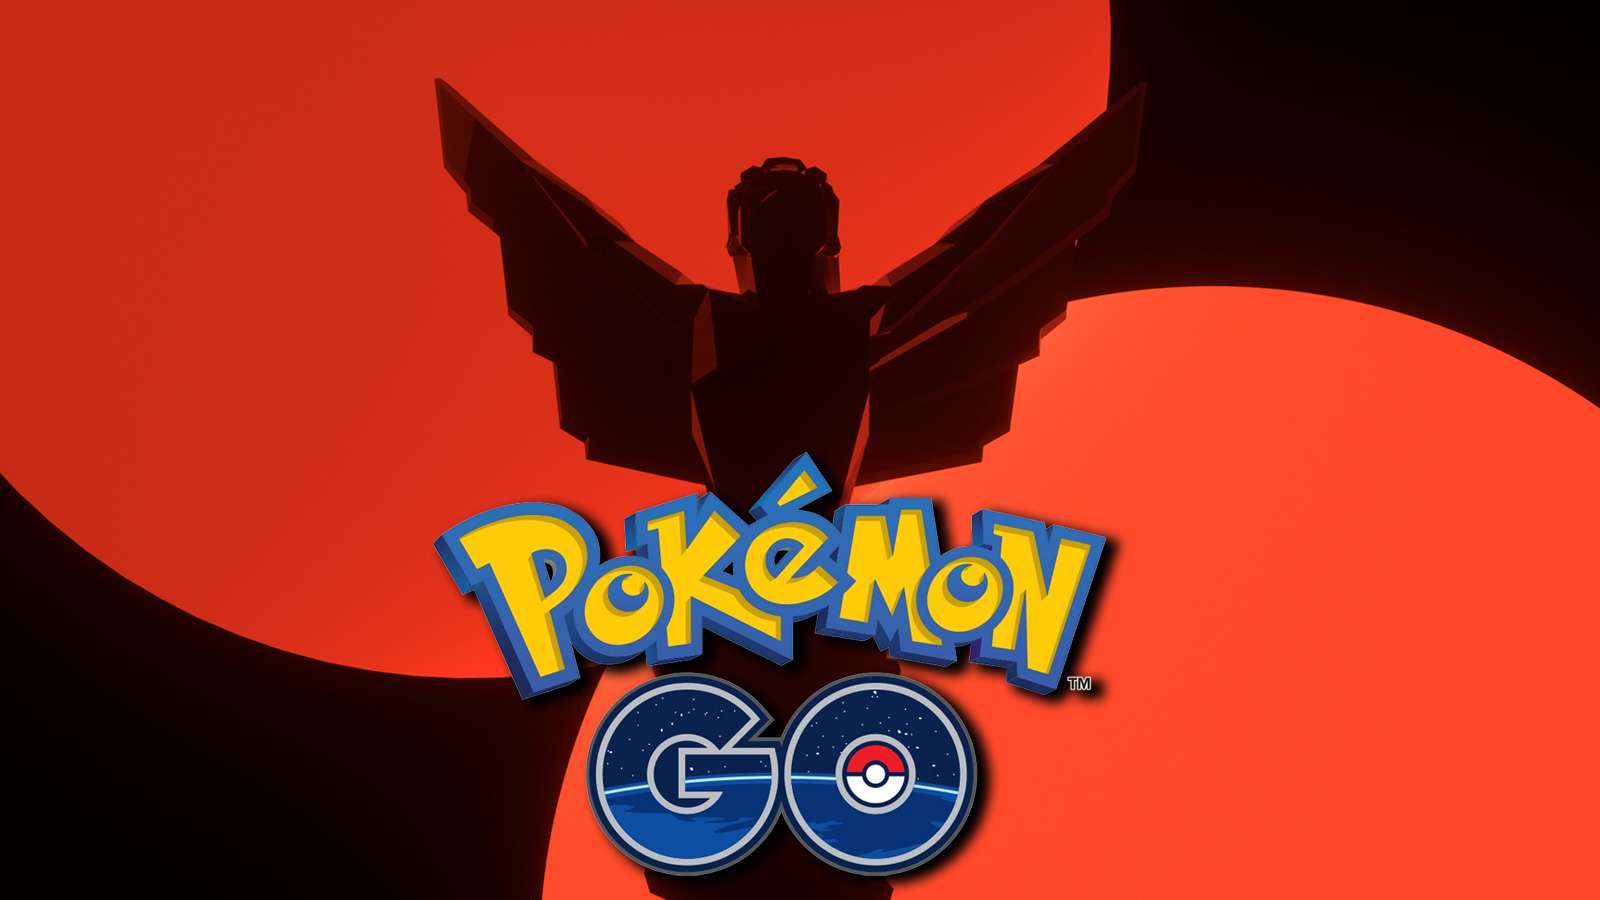 The Game Awards 2020 promotion next to Pokemon GO logo.